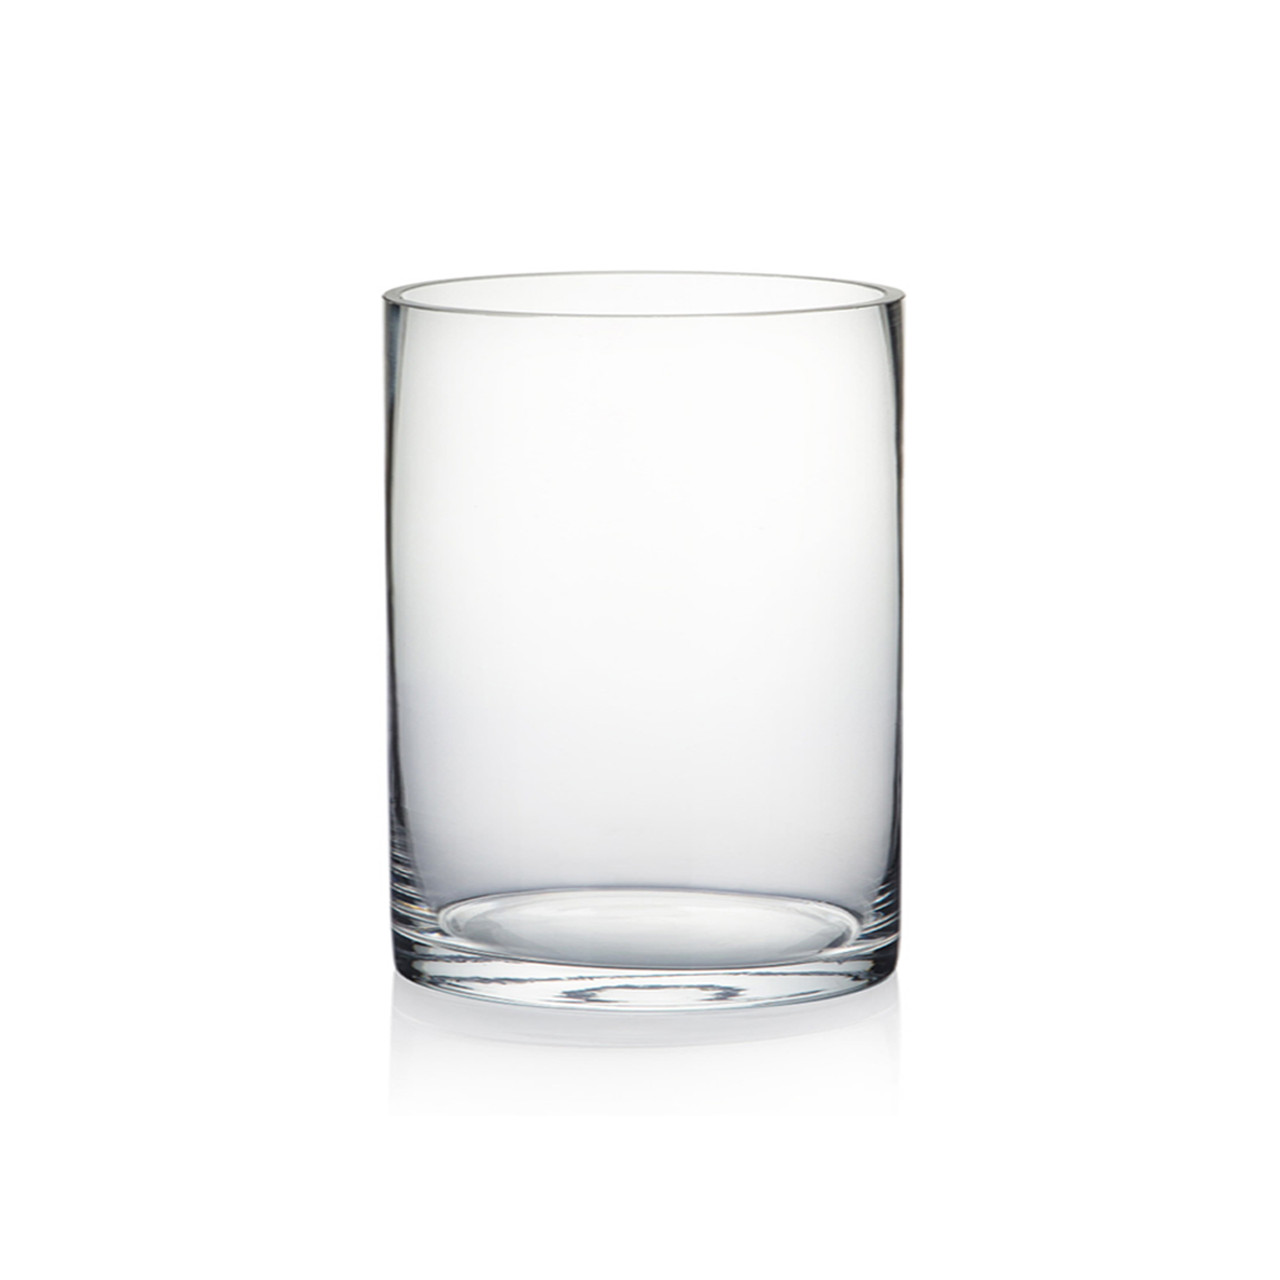 VMG0823 - Martini Glass Vase - 8x 23x 6